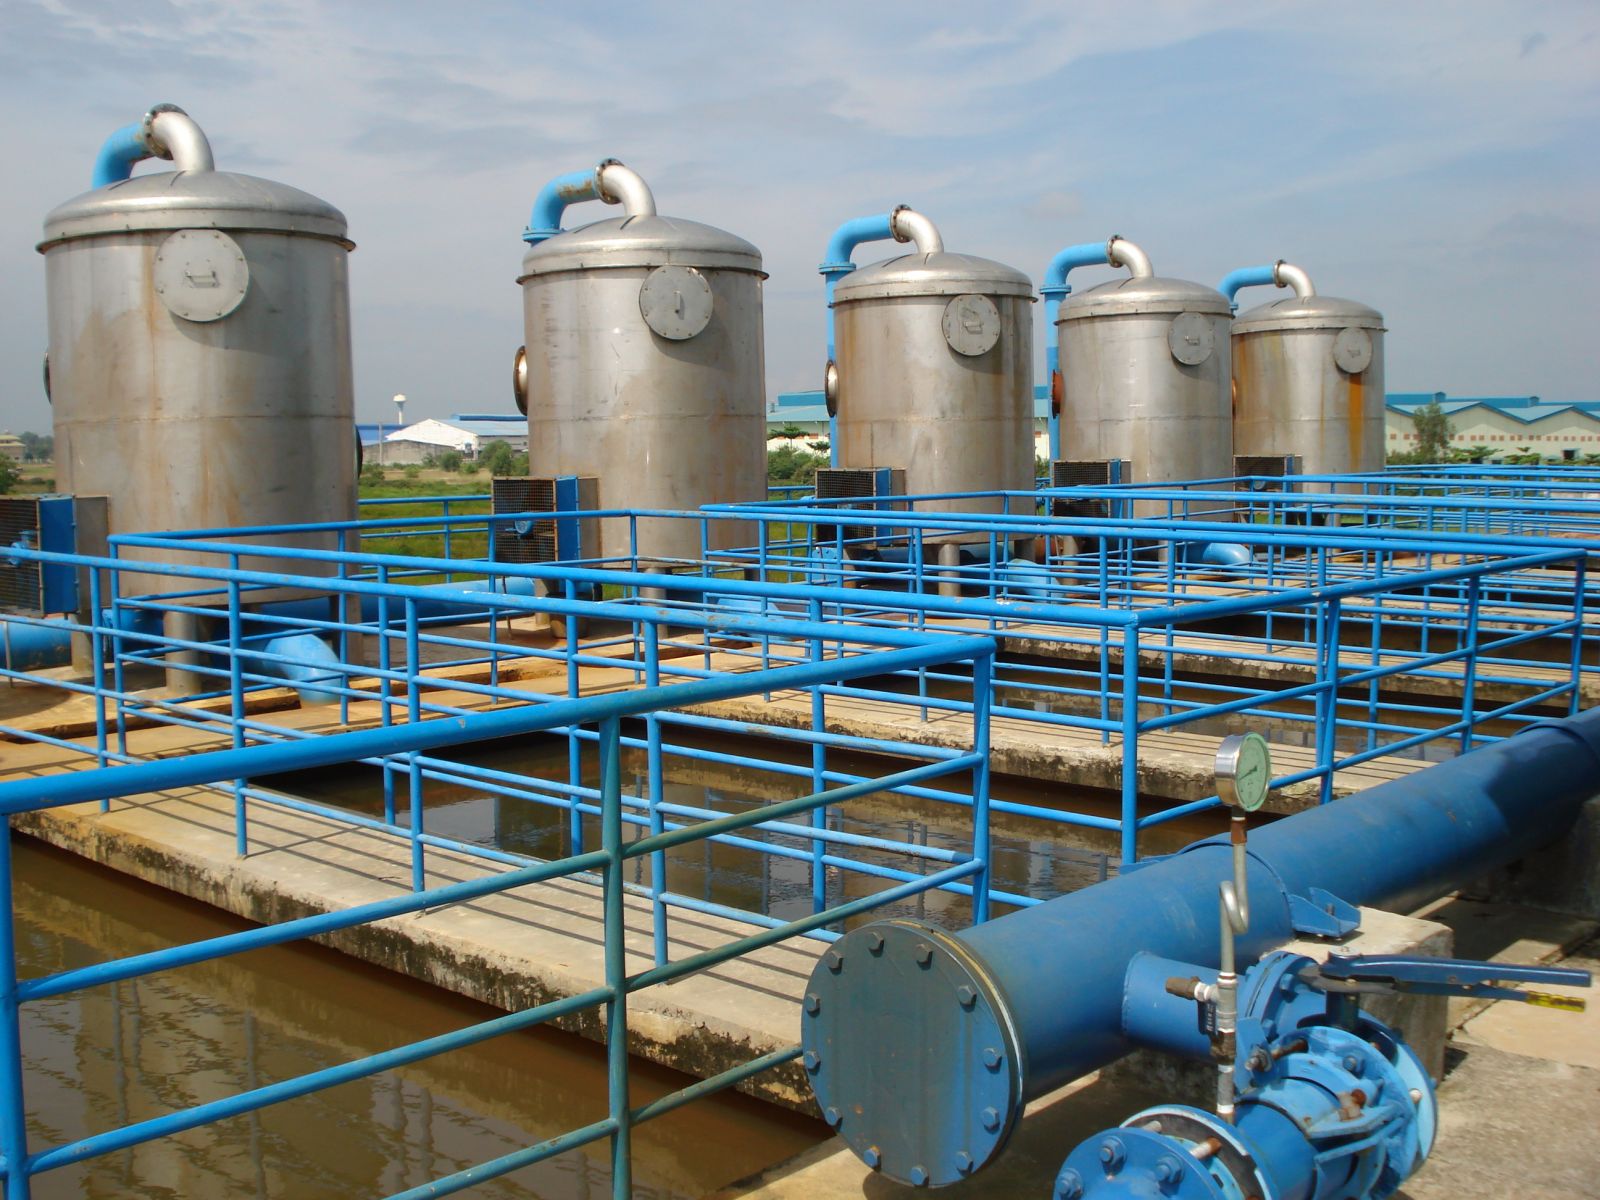 Cung cấp các giải pháp điều khiển và giám sát hệ thống xử lý nước công nghiệp